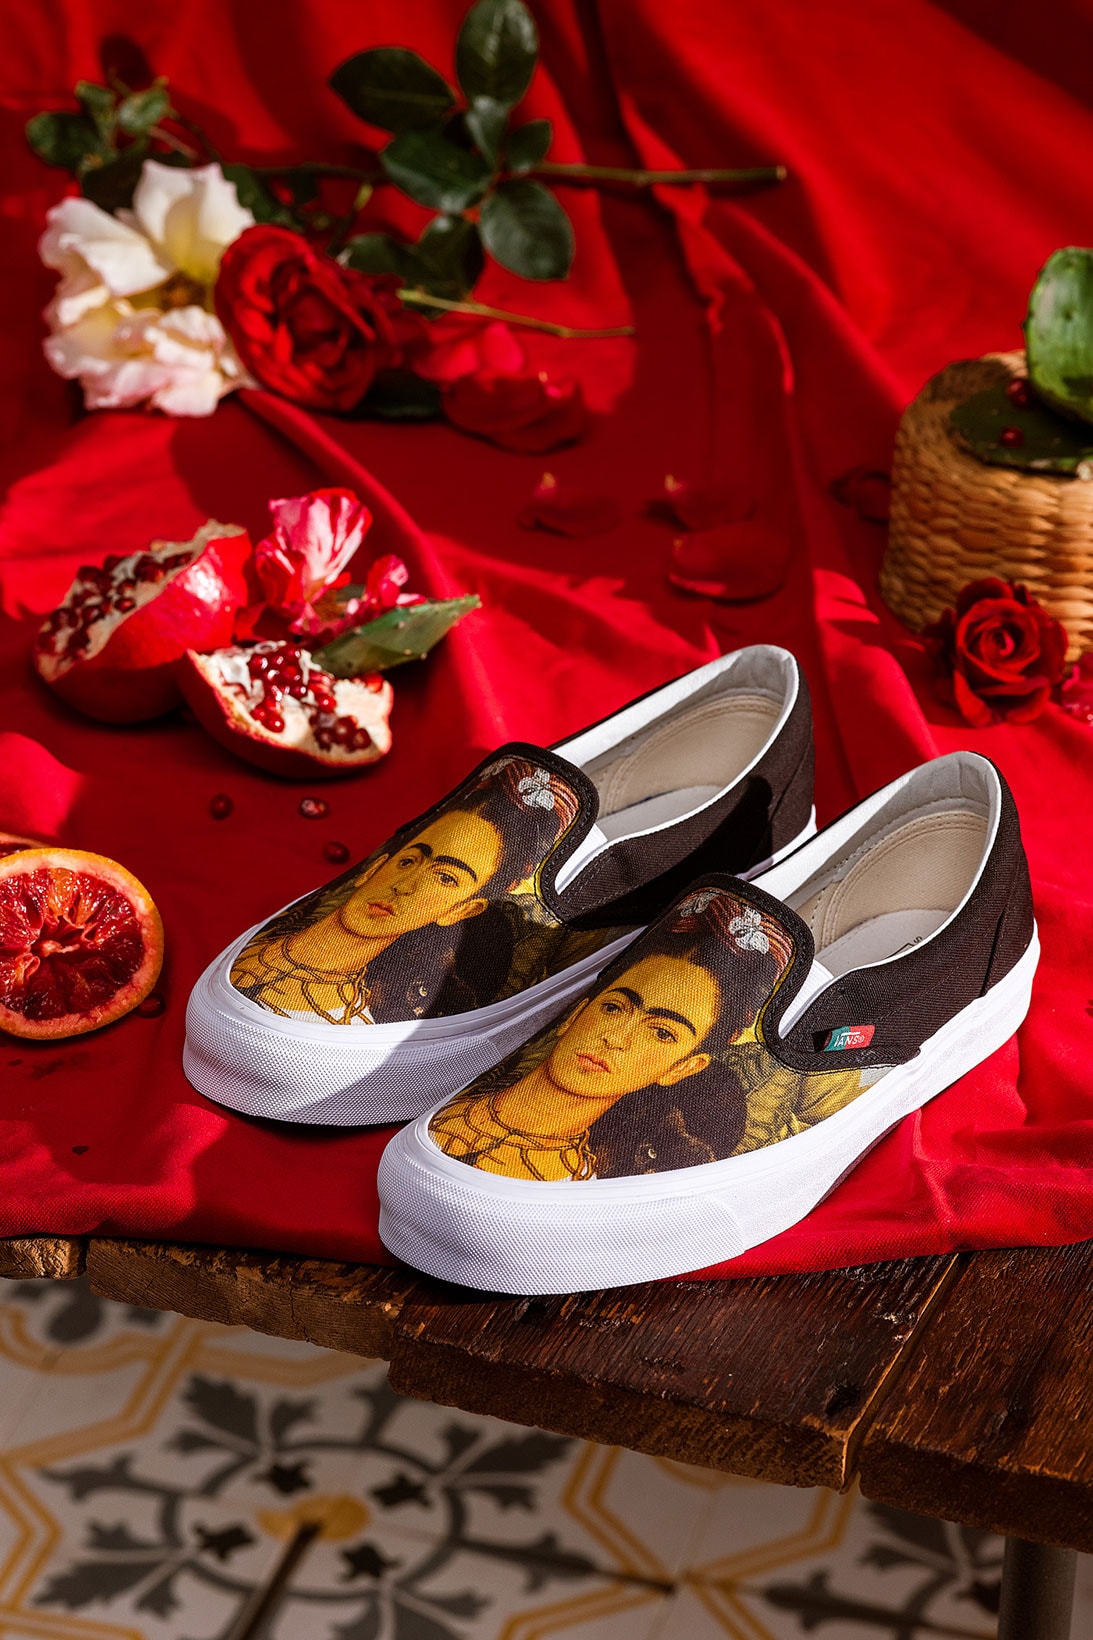 vault by vans frida kahlo mexican artist sneakers footwear authentic slip on sk8 hi